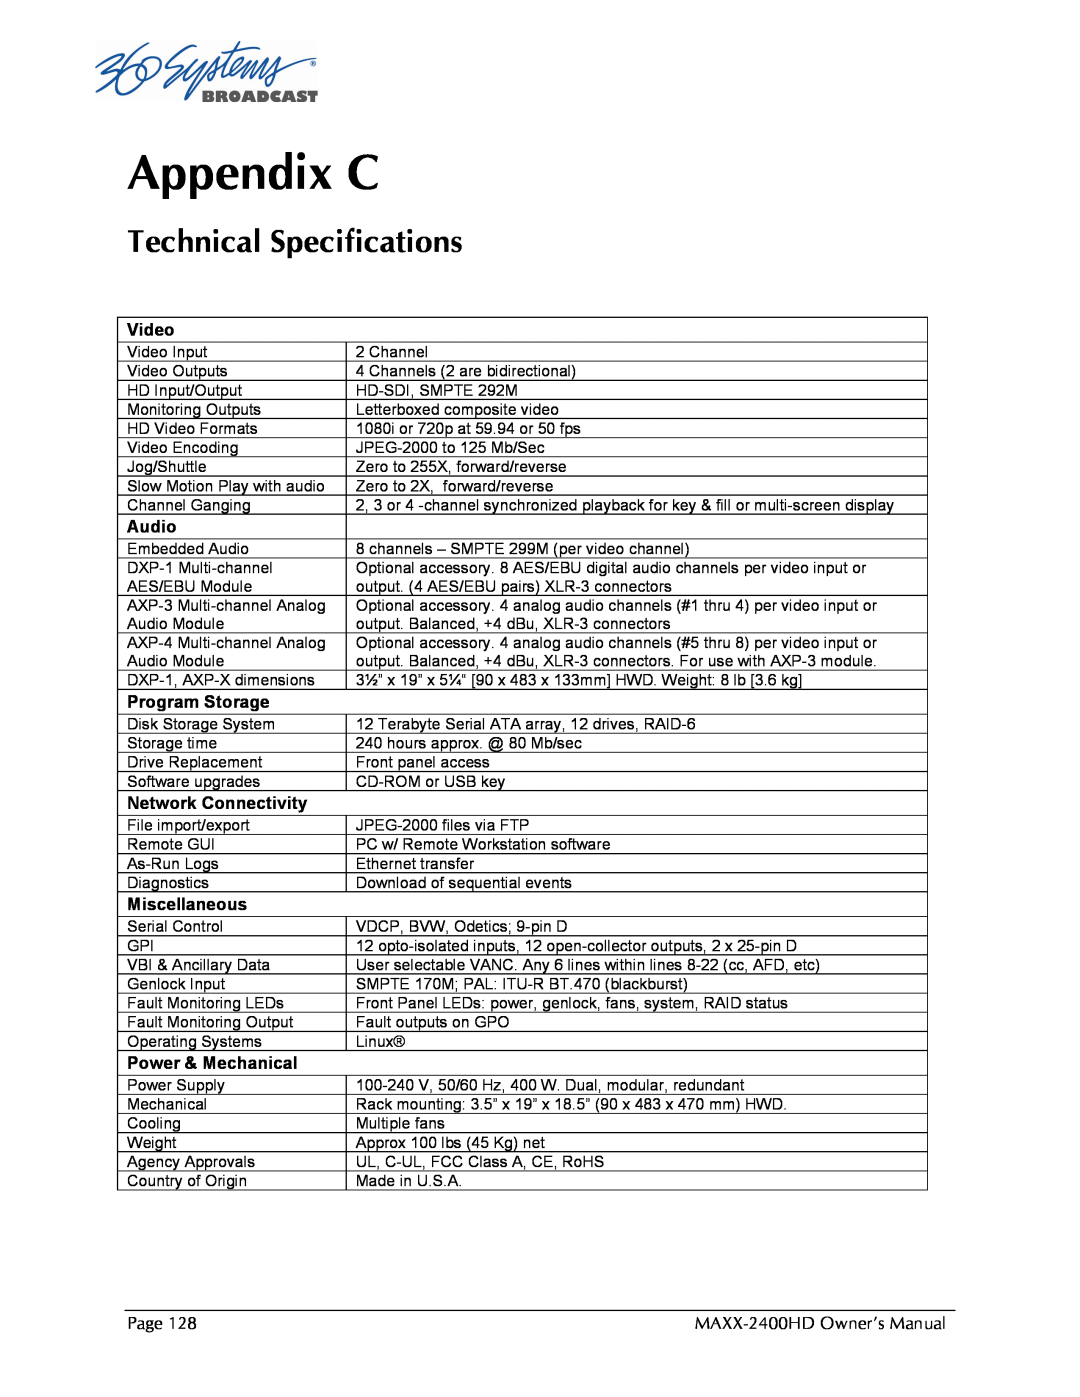 Maxxsonics MAXX-2400HD manual Appendix C, Technical Specifications 